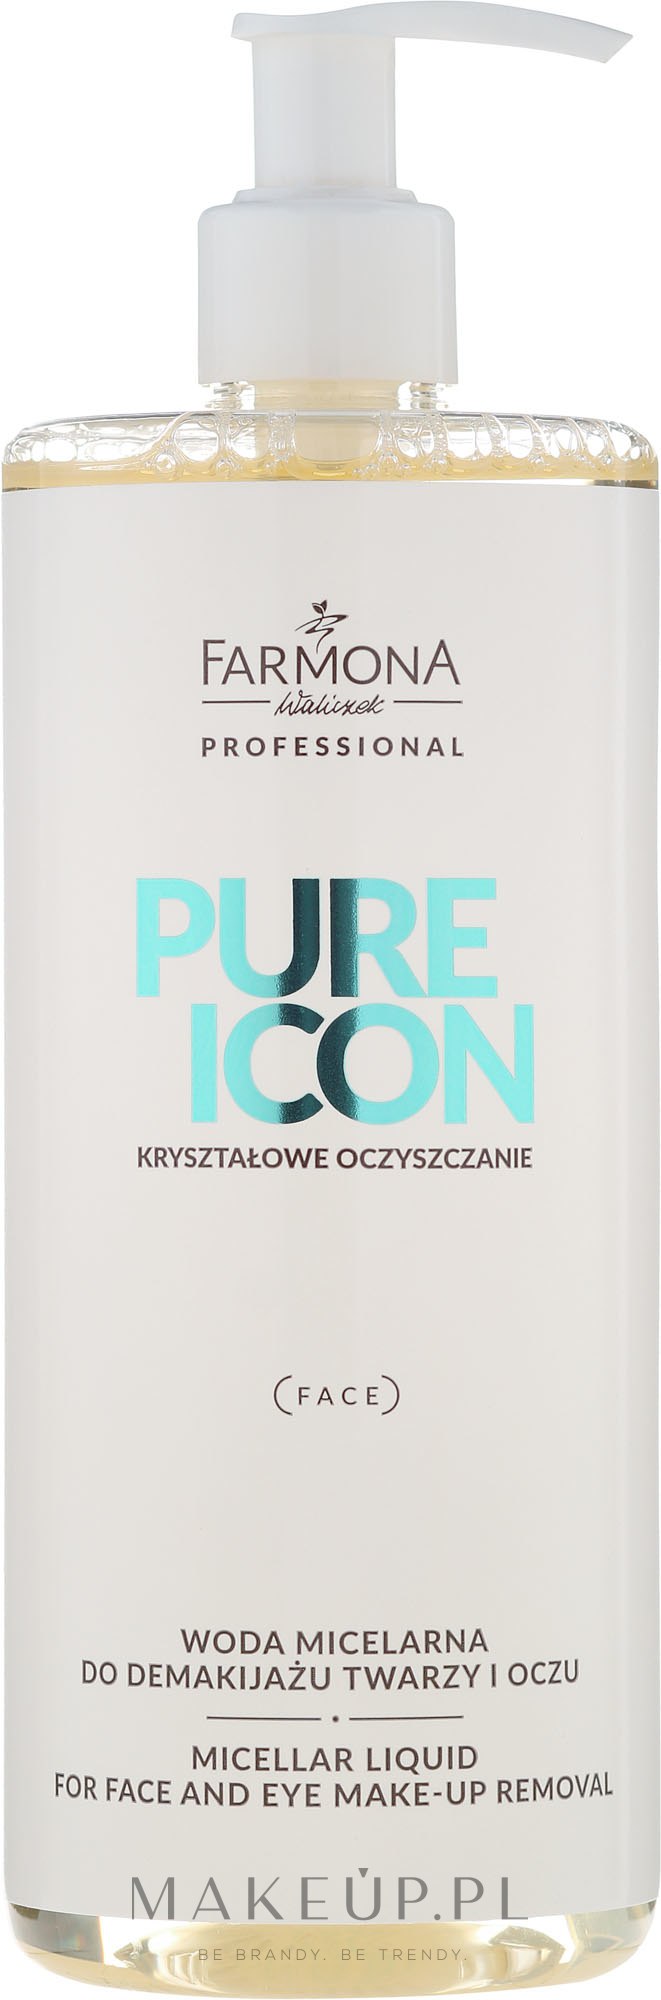 Woda micelarna do demakijażu twarzy i oczu - Farmona Professional Pure Icon Kryształowe oczyszczanie — Zdjęcie 500 ml